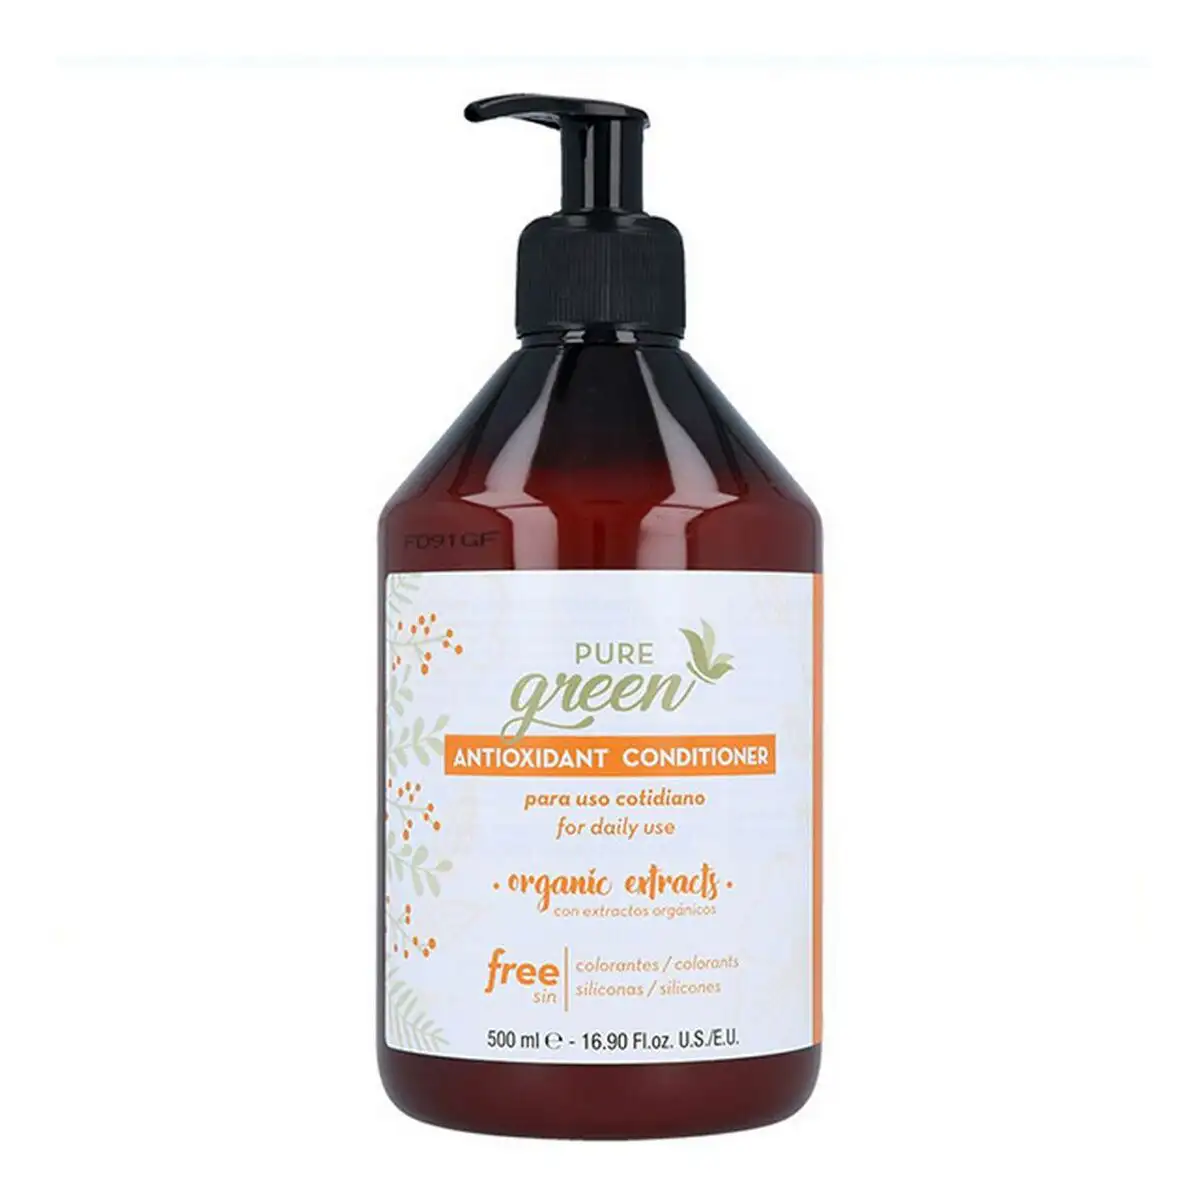 Apres shampooing pure green pure green antioxydante_5339. Bienvenue chez DIAYTAR SENEGAL - Où Chaque Achat Fait une Différence. Découvrez notre gamme de produits qui reflètent l'engagement envers la qualité et le respect de l'environnement.